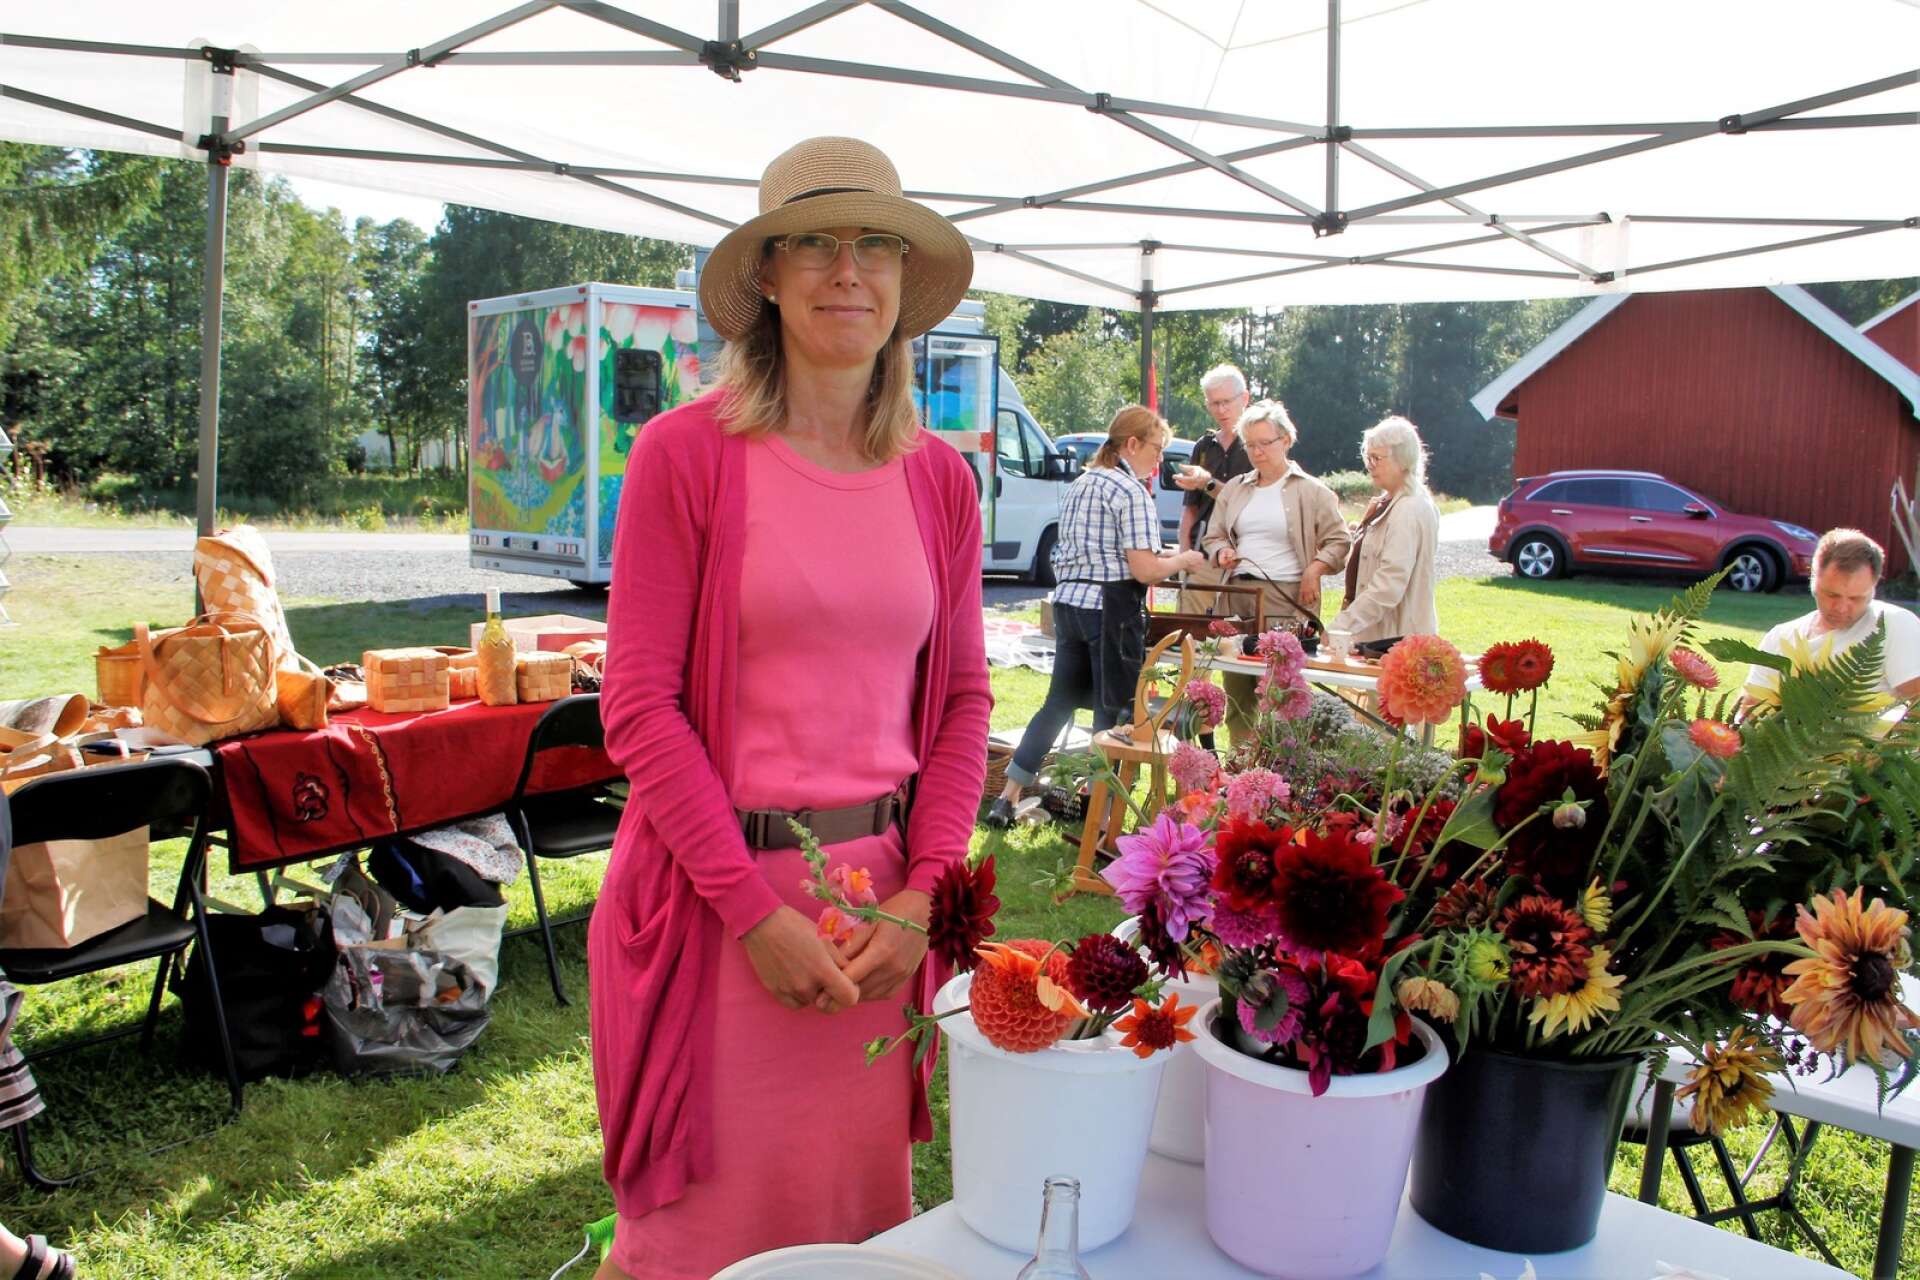 Annelie Johansson vill inspirera med sina blommor och odlingar. På Kvarnens dag på Tollebol, sålde hon buketter och visade lite bindningsteknik.